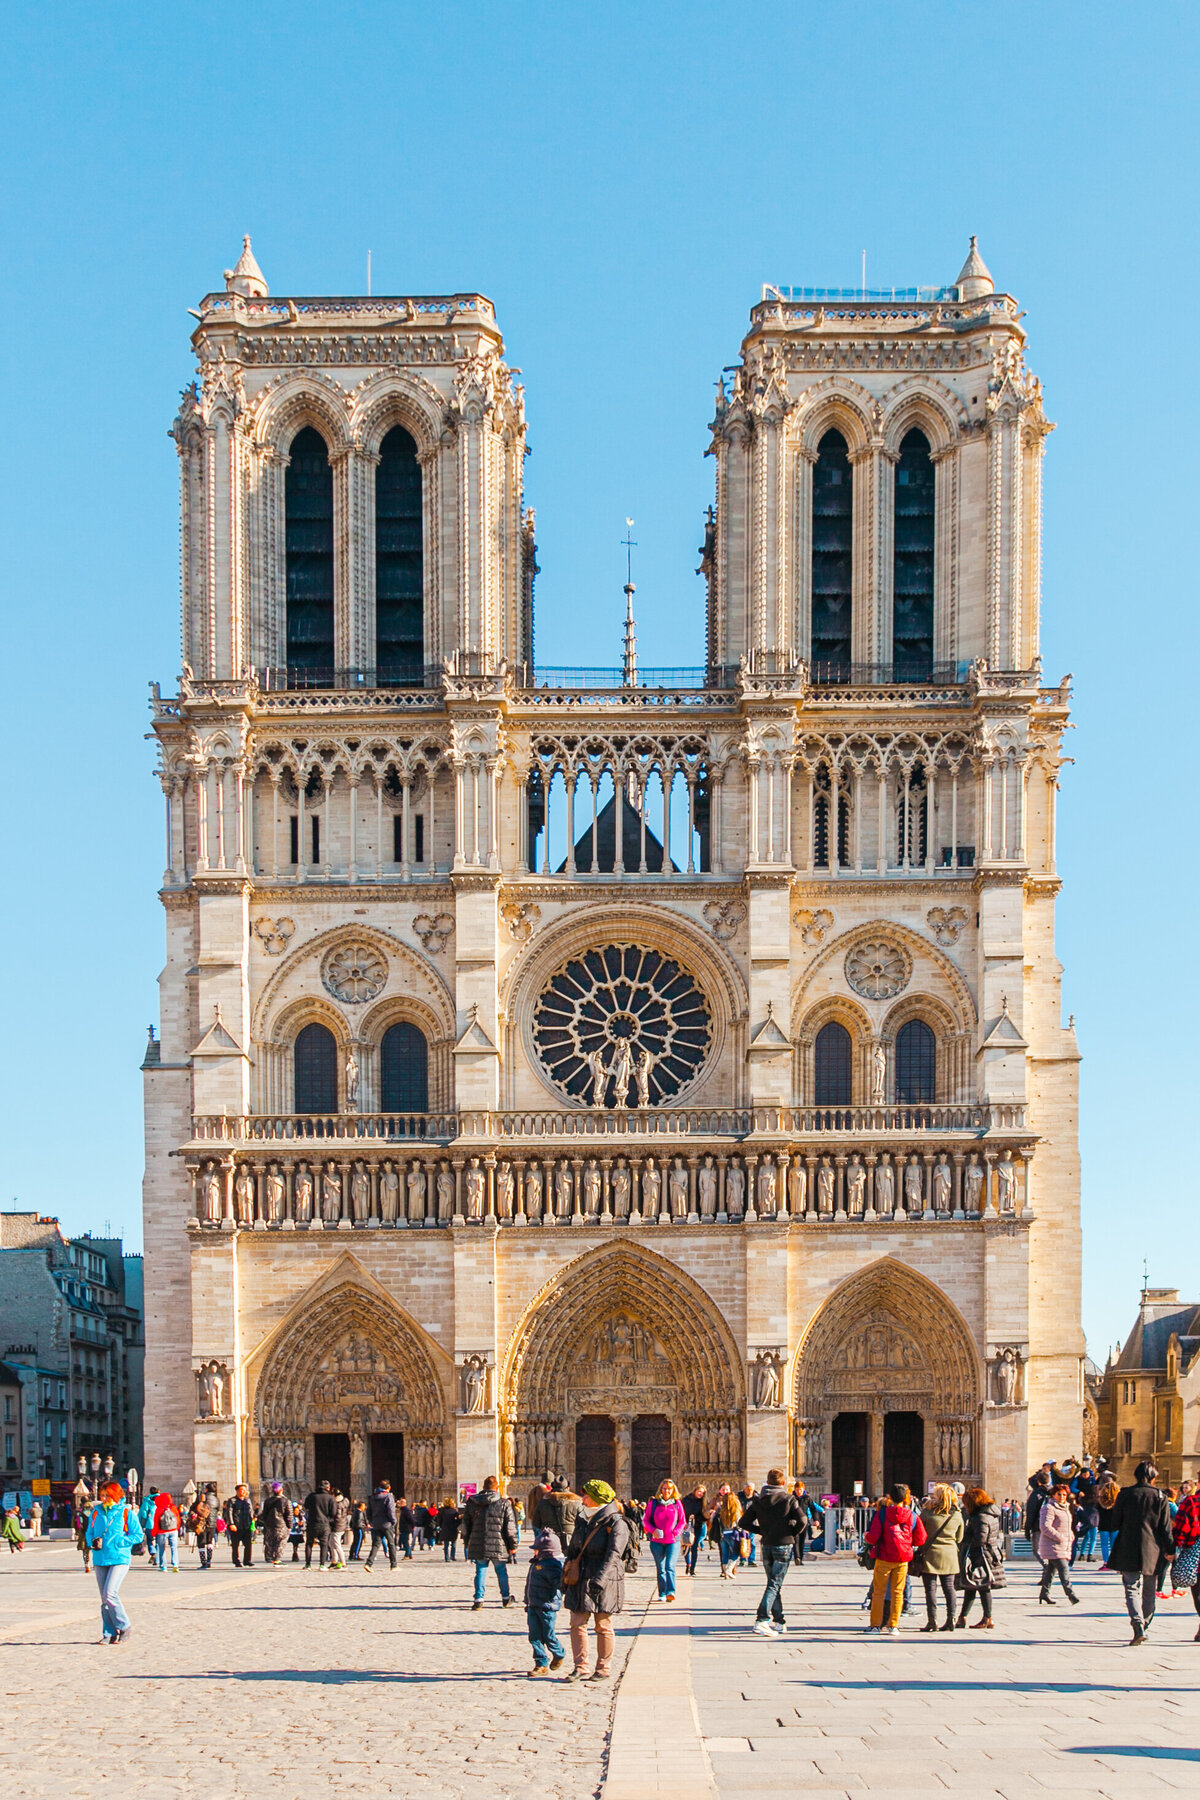 016-017-KBP-Paris-France-Notre-Dame